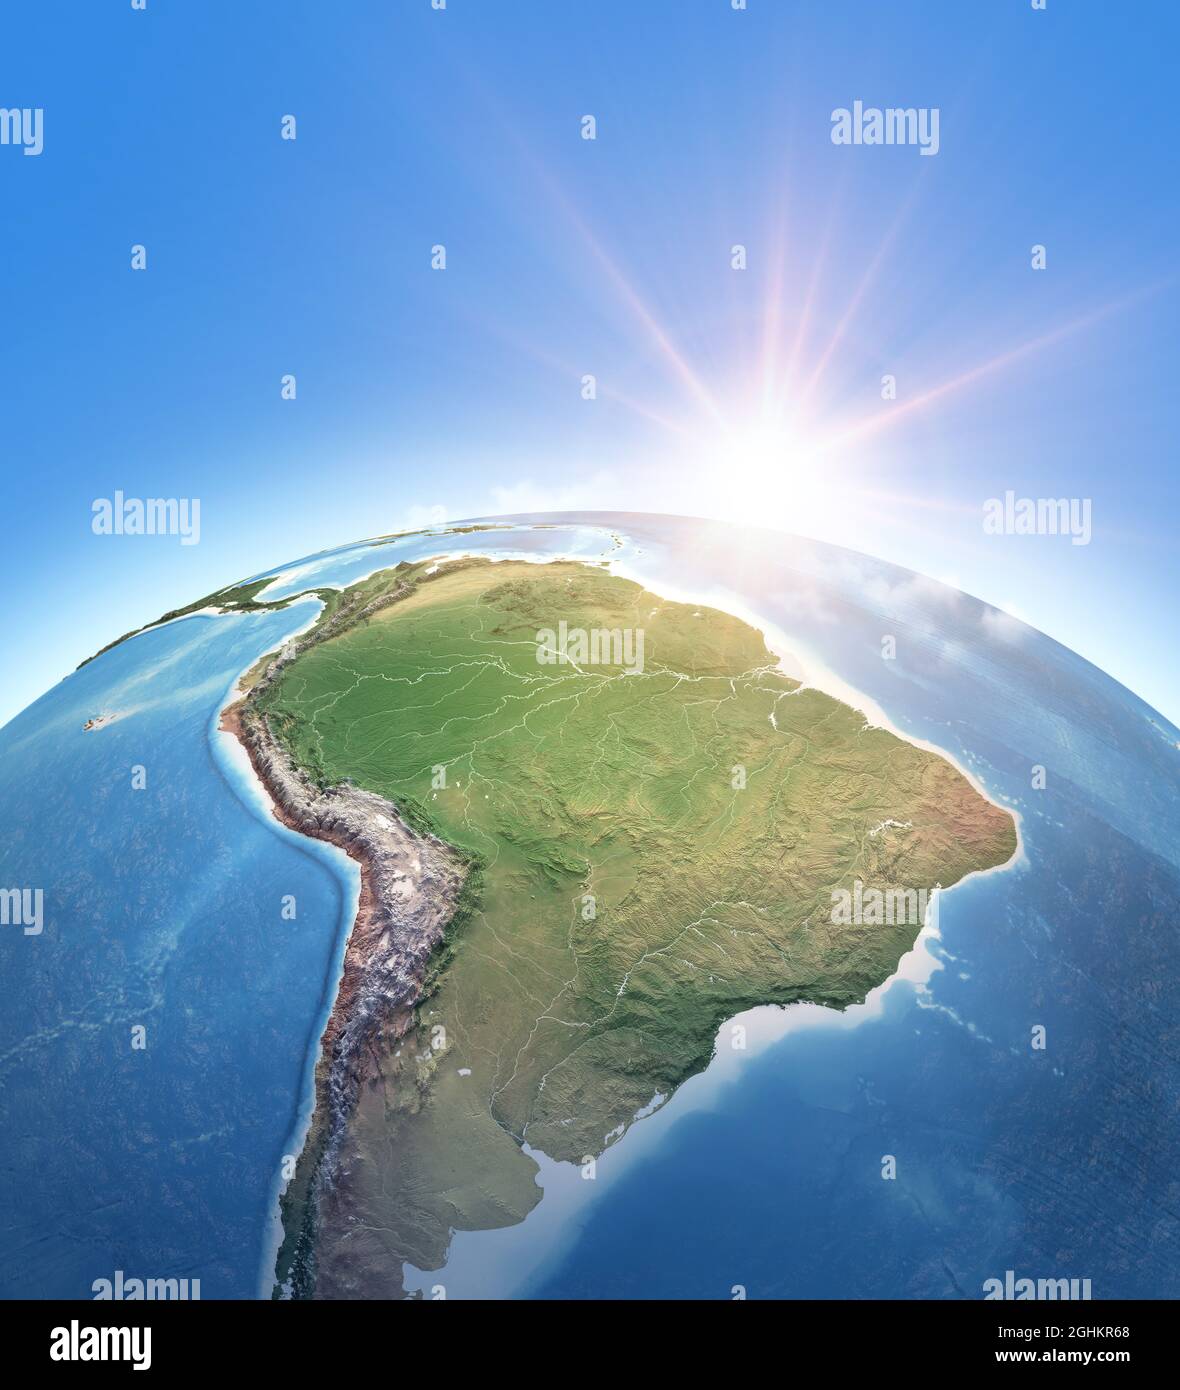 Sonne scheint über dem Planeten Erde. Physische Karte von Südamerika; Brasilien und Amazonas-Regenwald, Andes cordillera. Elemente dieses Bildes, die von der NASA eingerichtet wurden Stockfoto